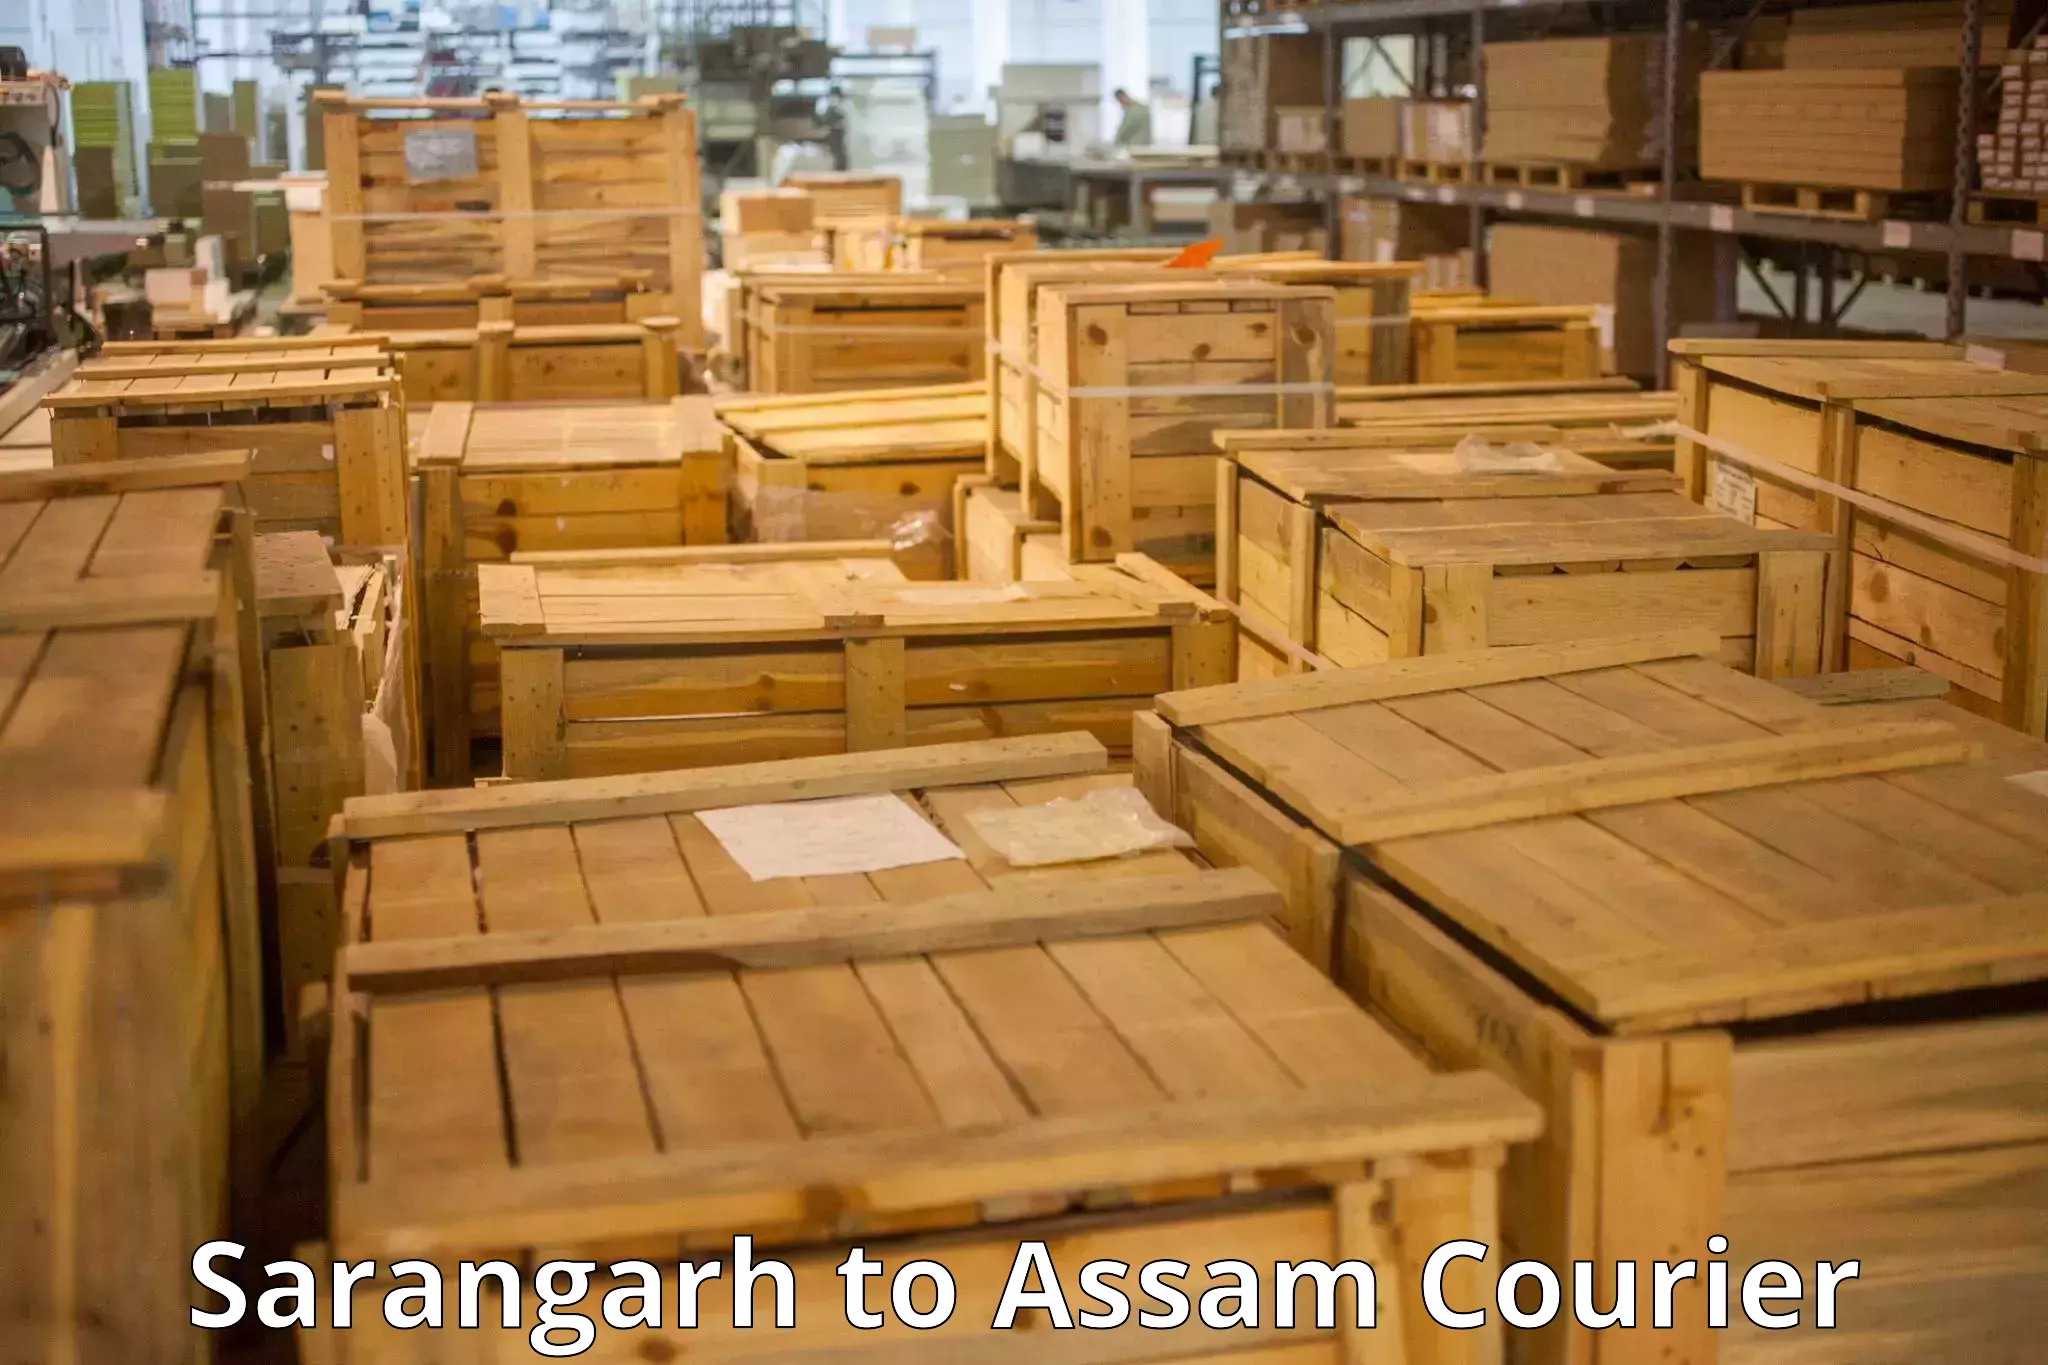 Luggage shipping service Sarangarh to Borholla